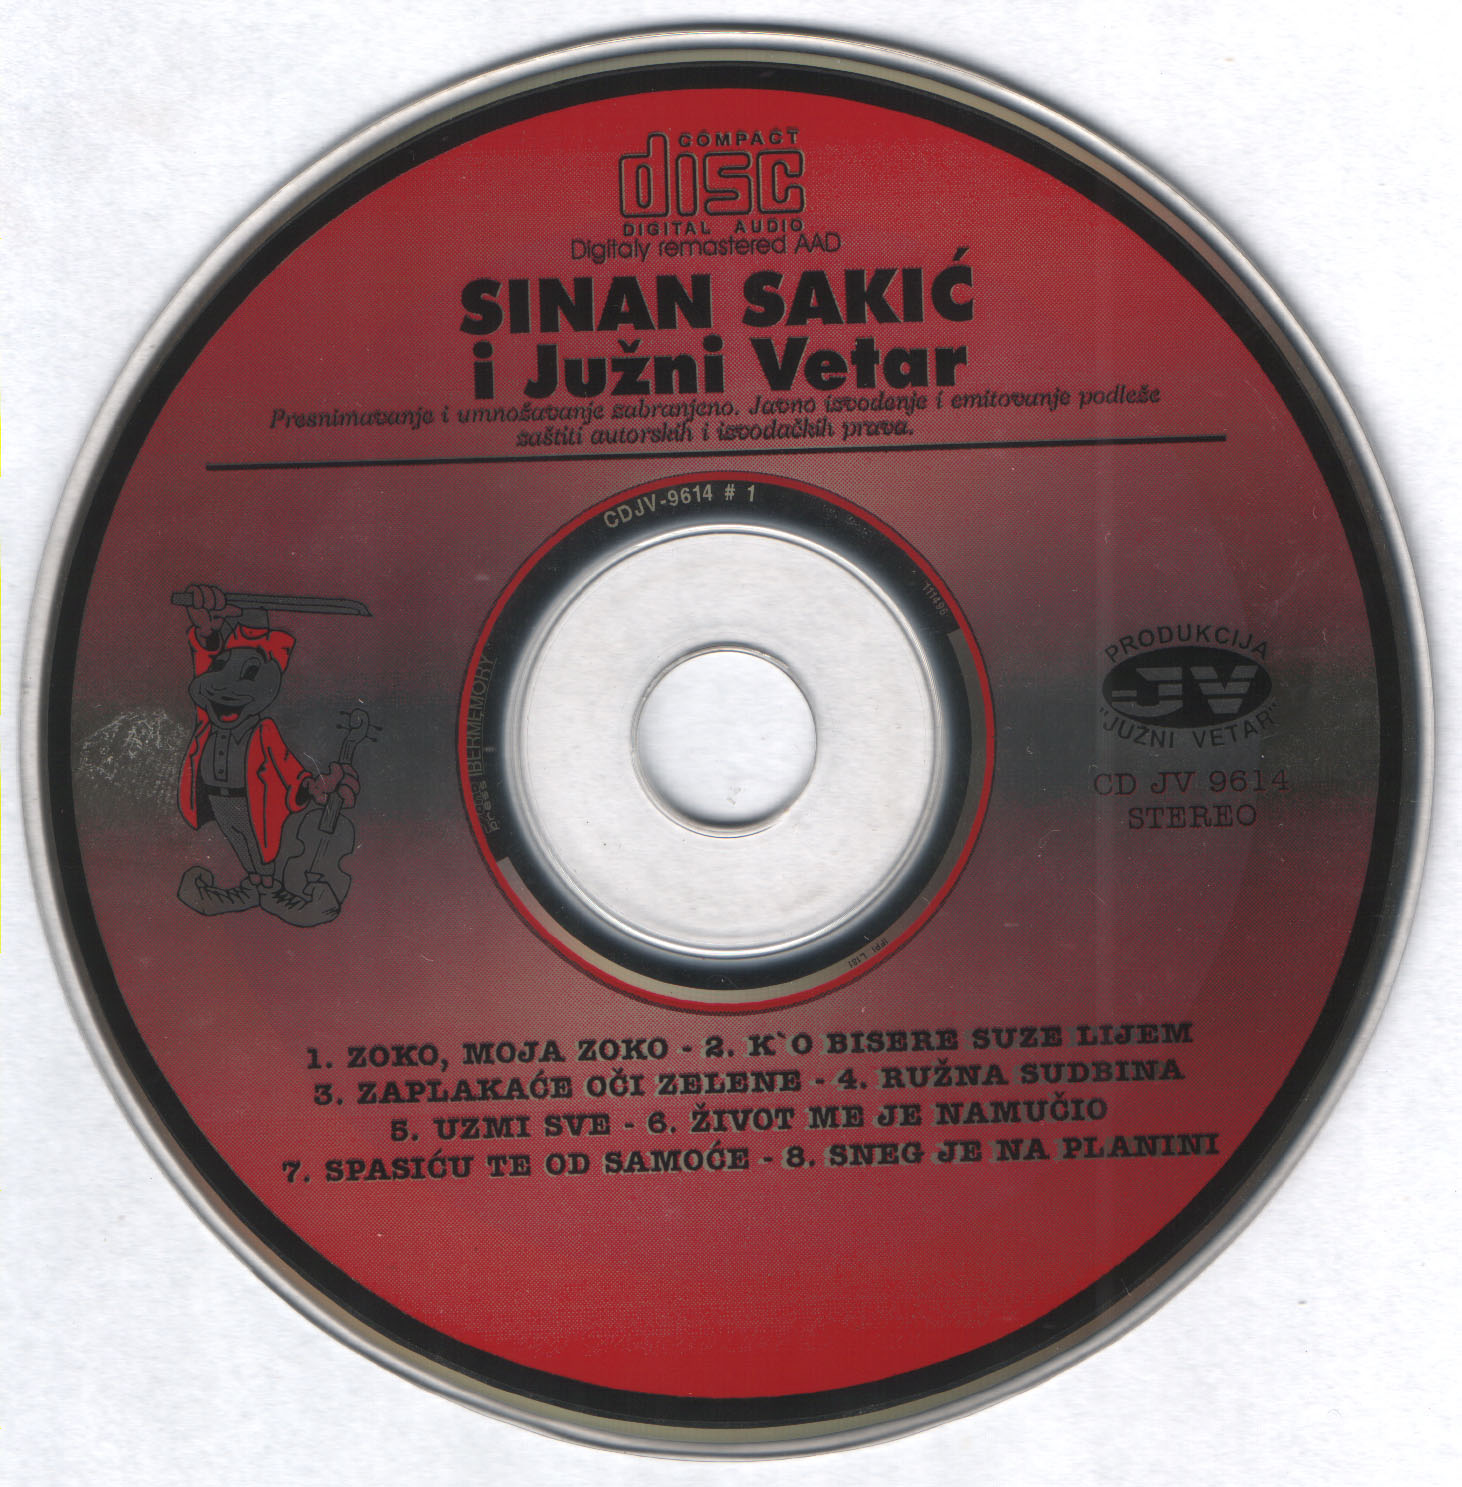 Sinan Sakic 1996 Cd